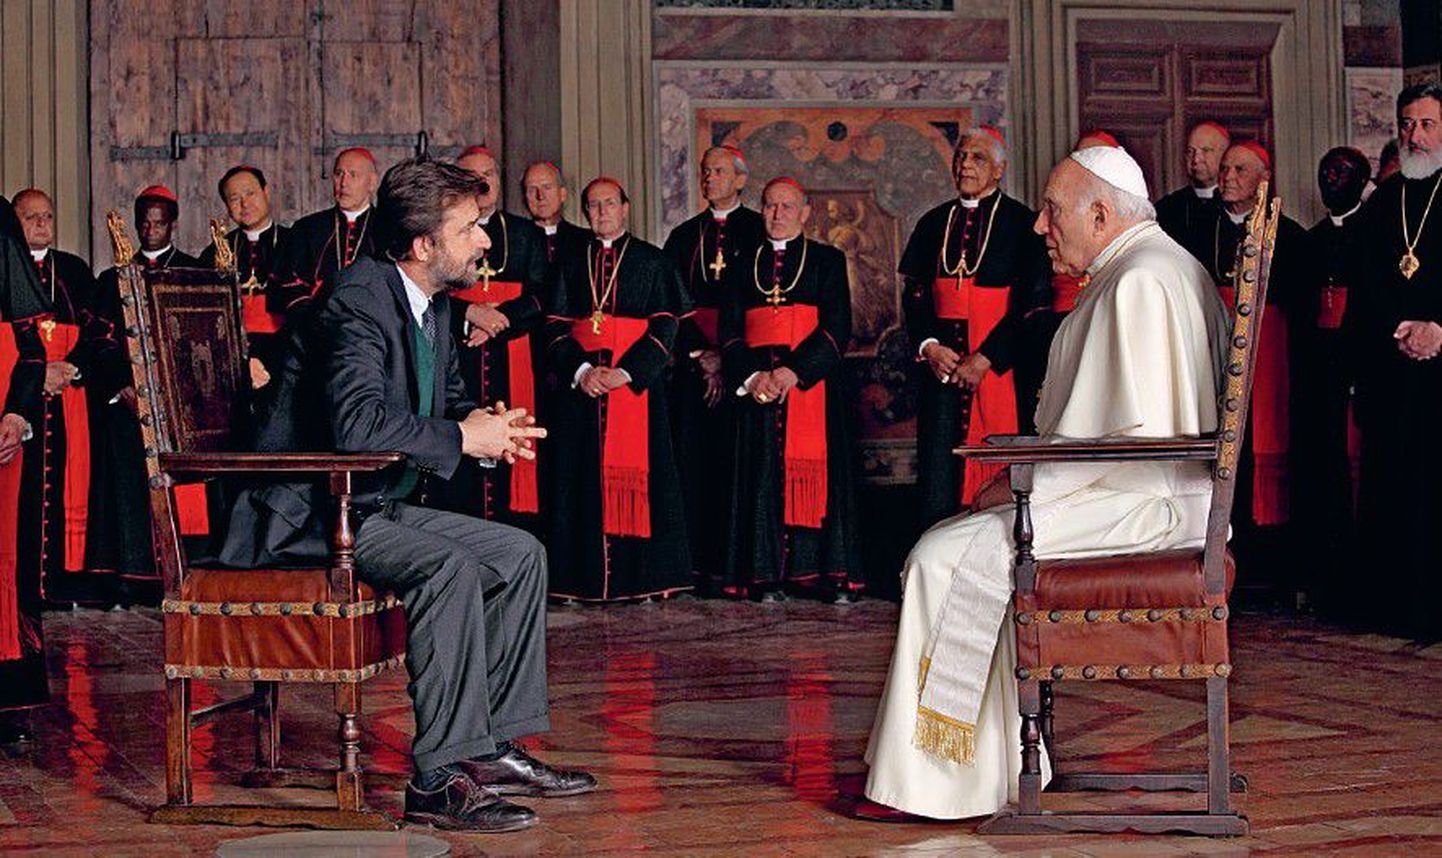 Психоаналитик (Нанни Моретти) беседует с новоиспеченным Папой (Мишель Пикколи), пытаясь вывести его из депрессии.